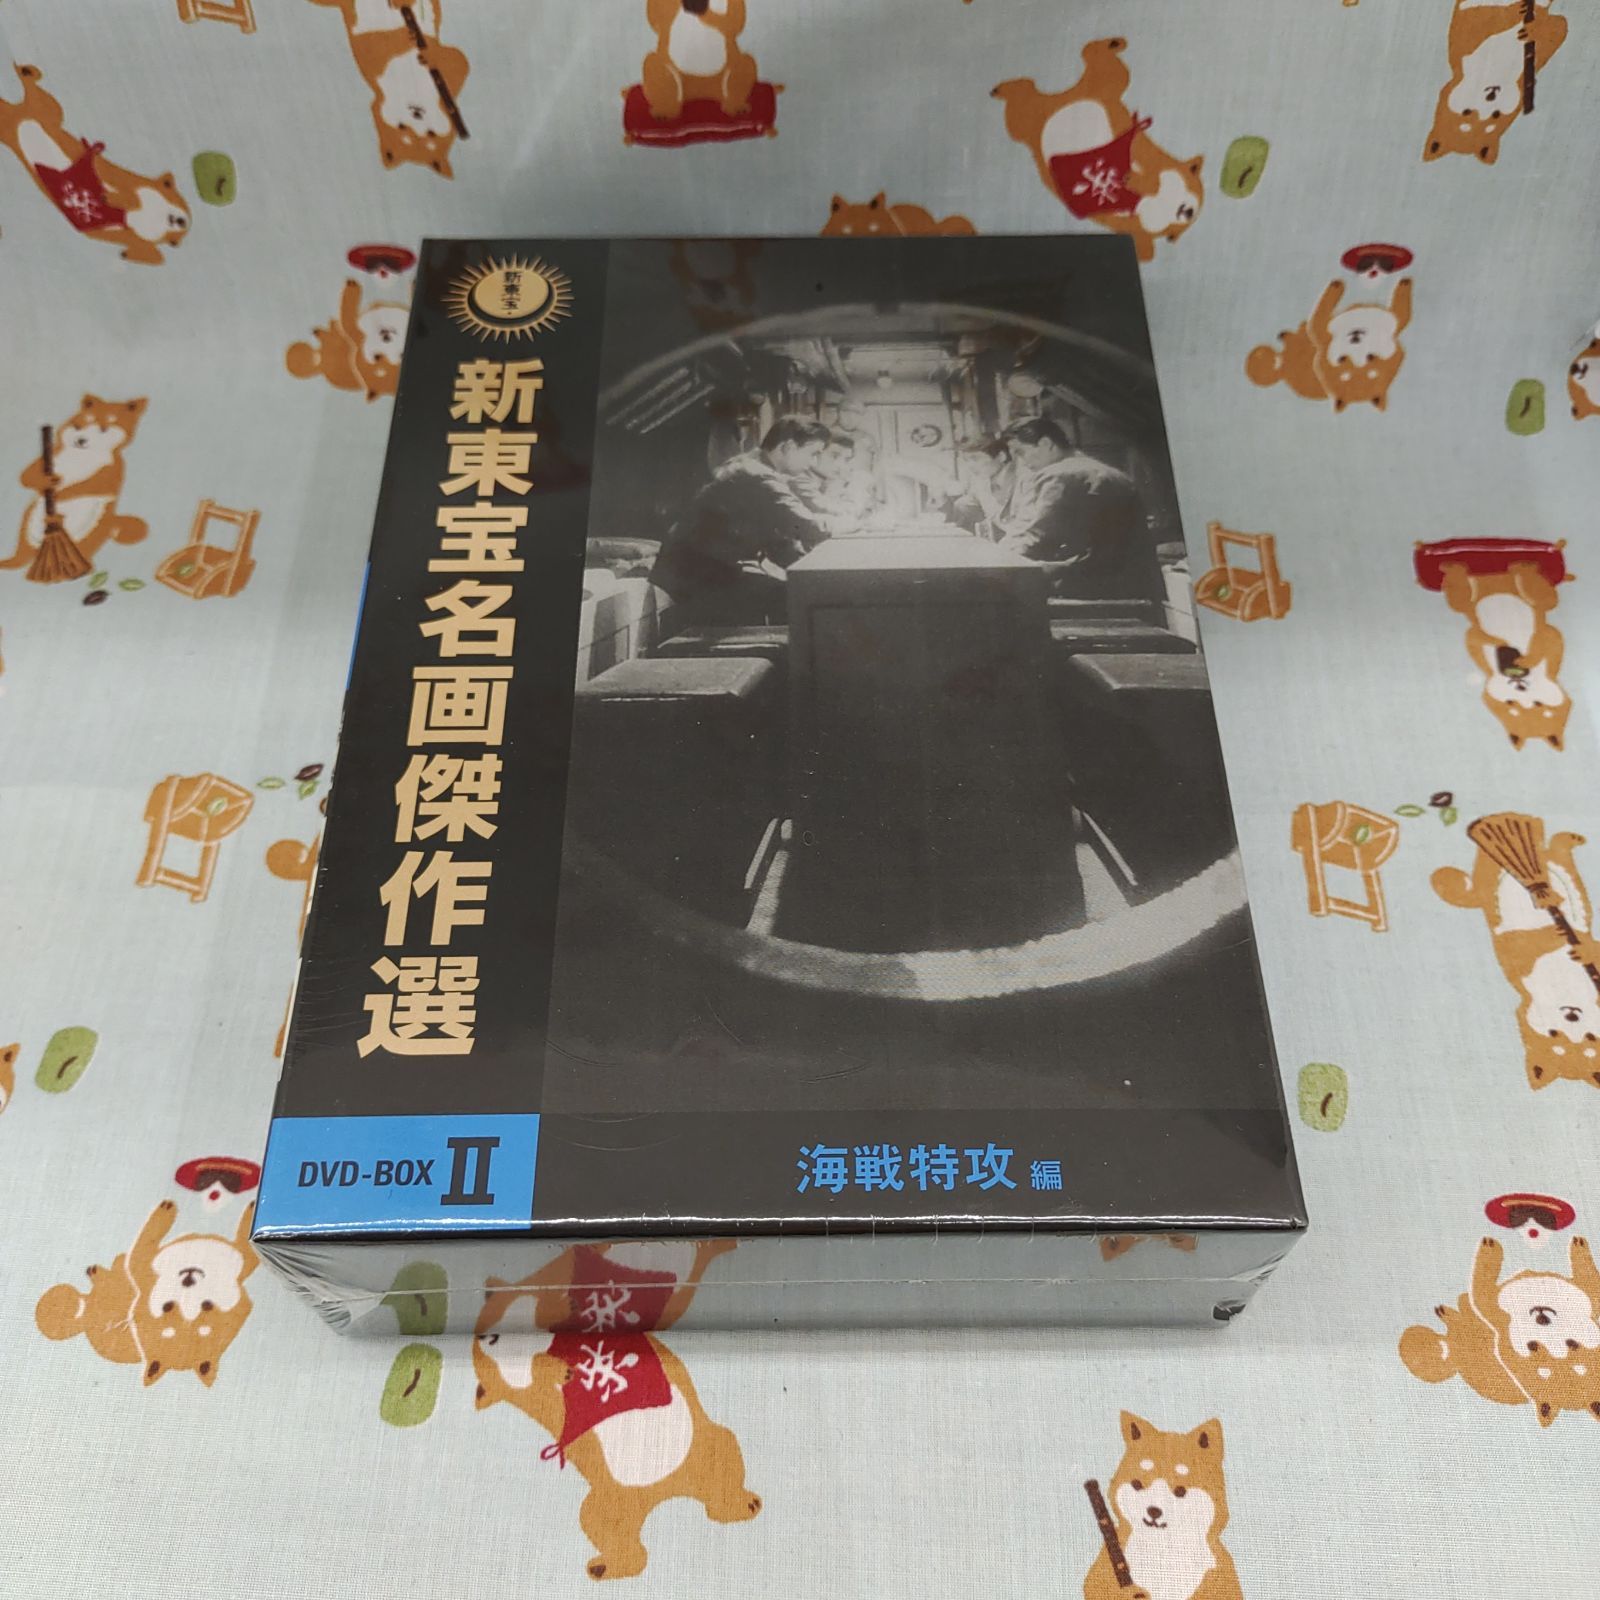 新東宝名画傑作選 DVD-BOX Ⅱ-海戦特攻編-〈3枚組〉シュリンク破れあり M-600